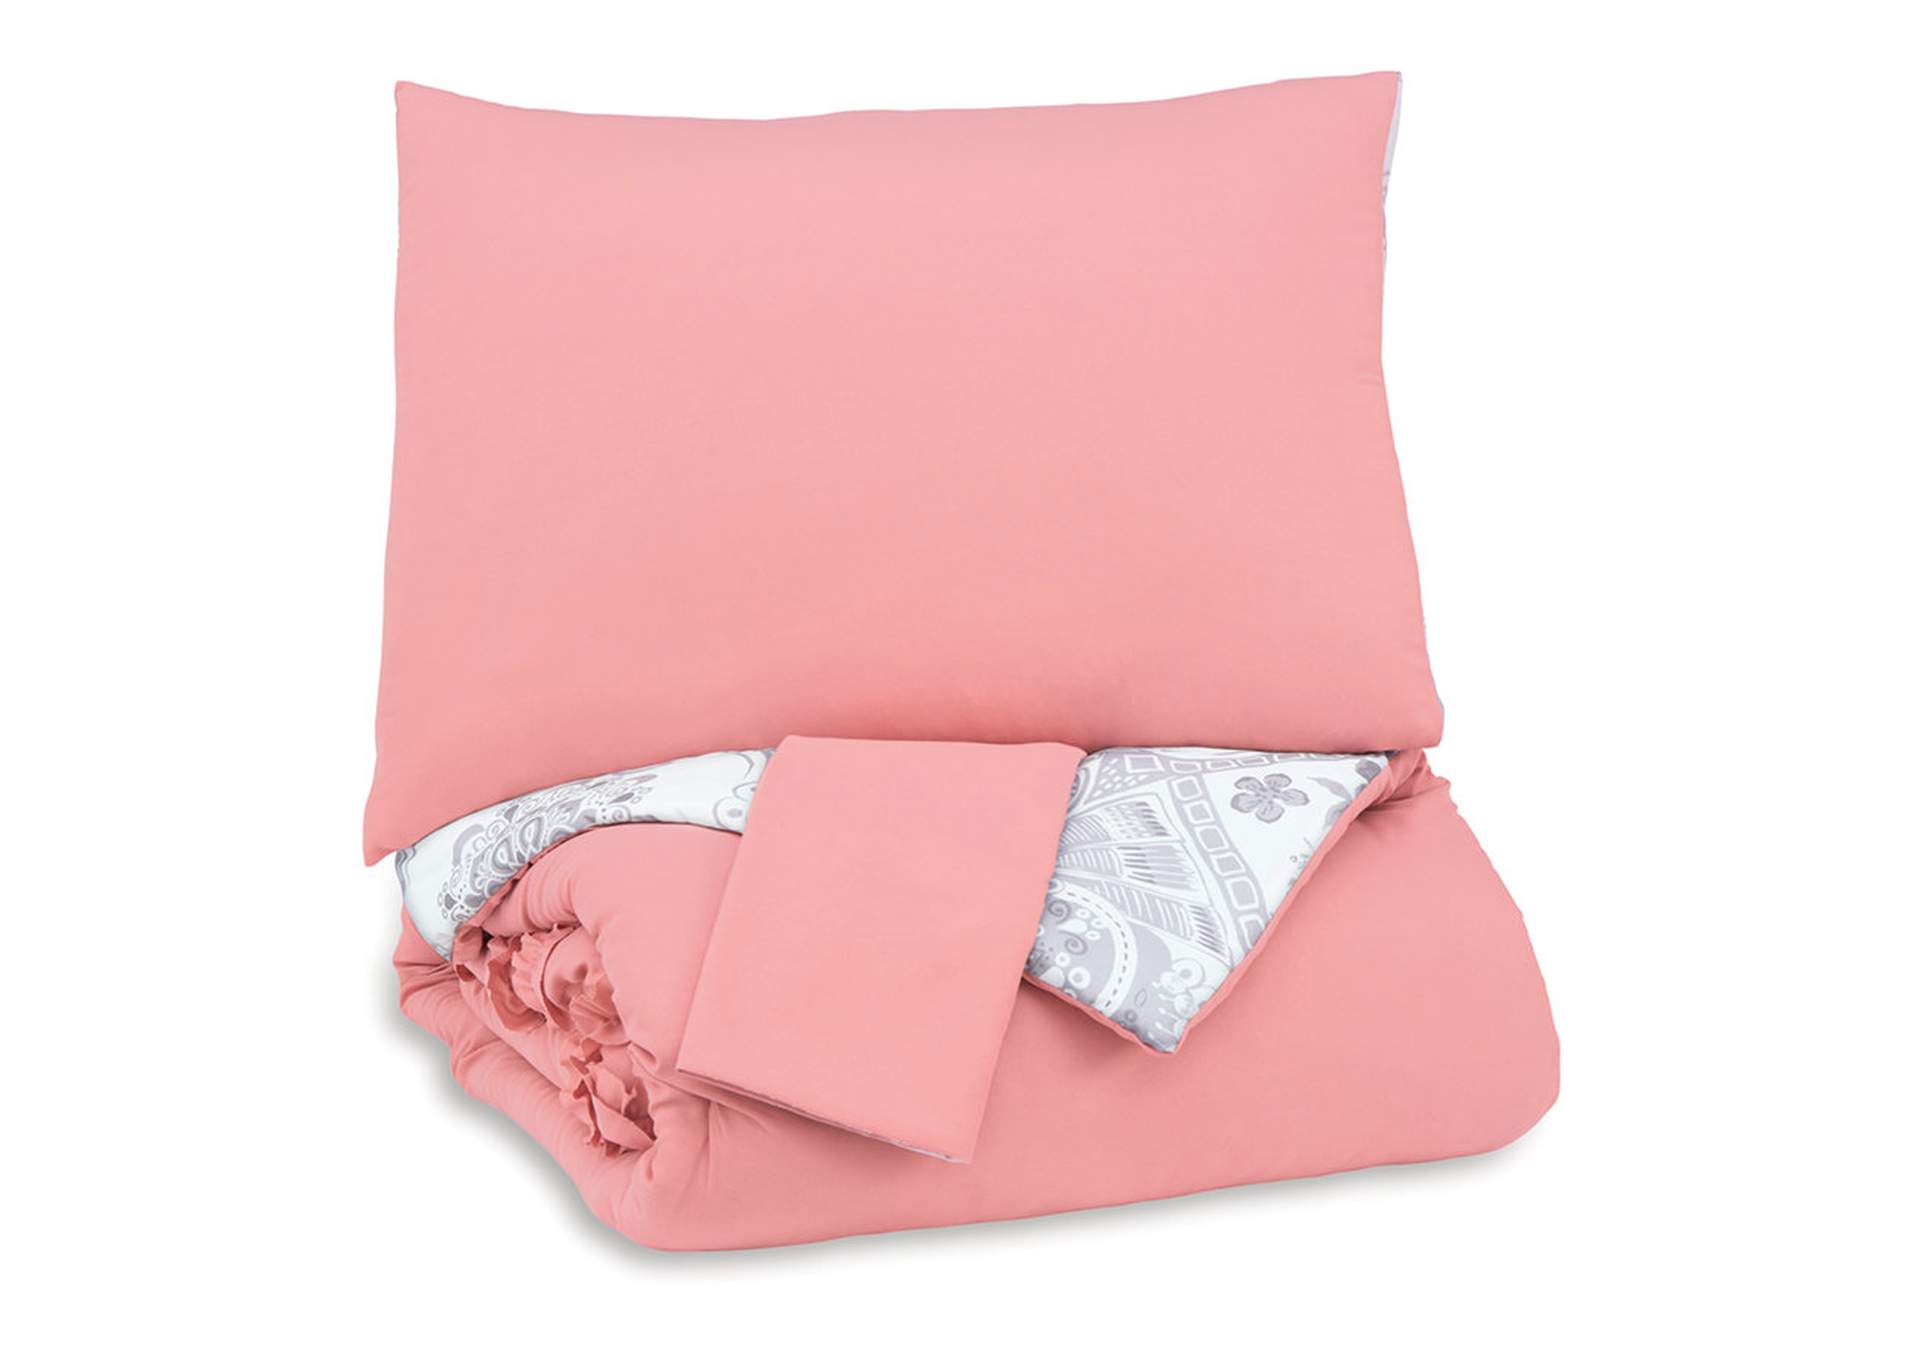 Avaleigh Full Comforter Set